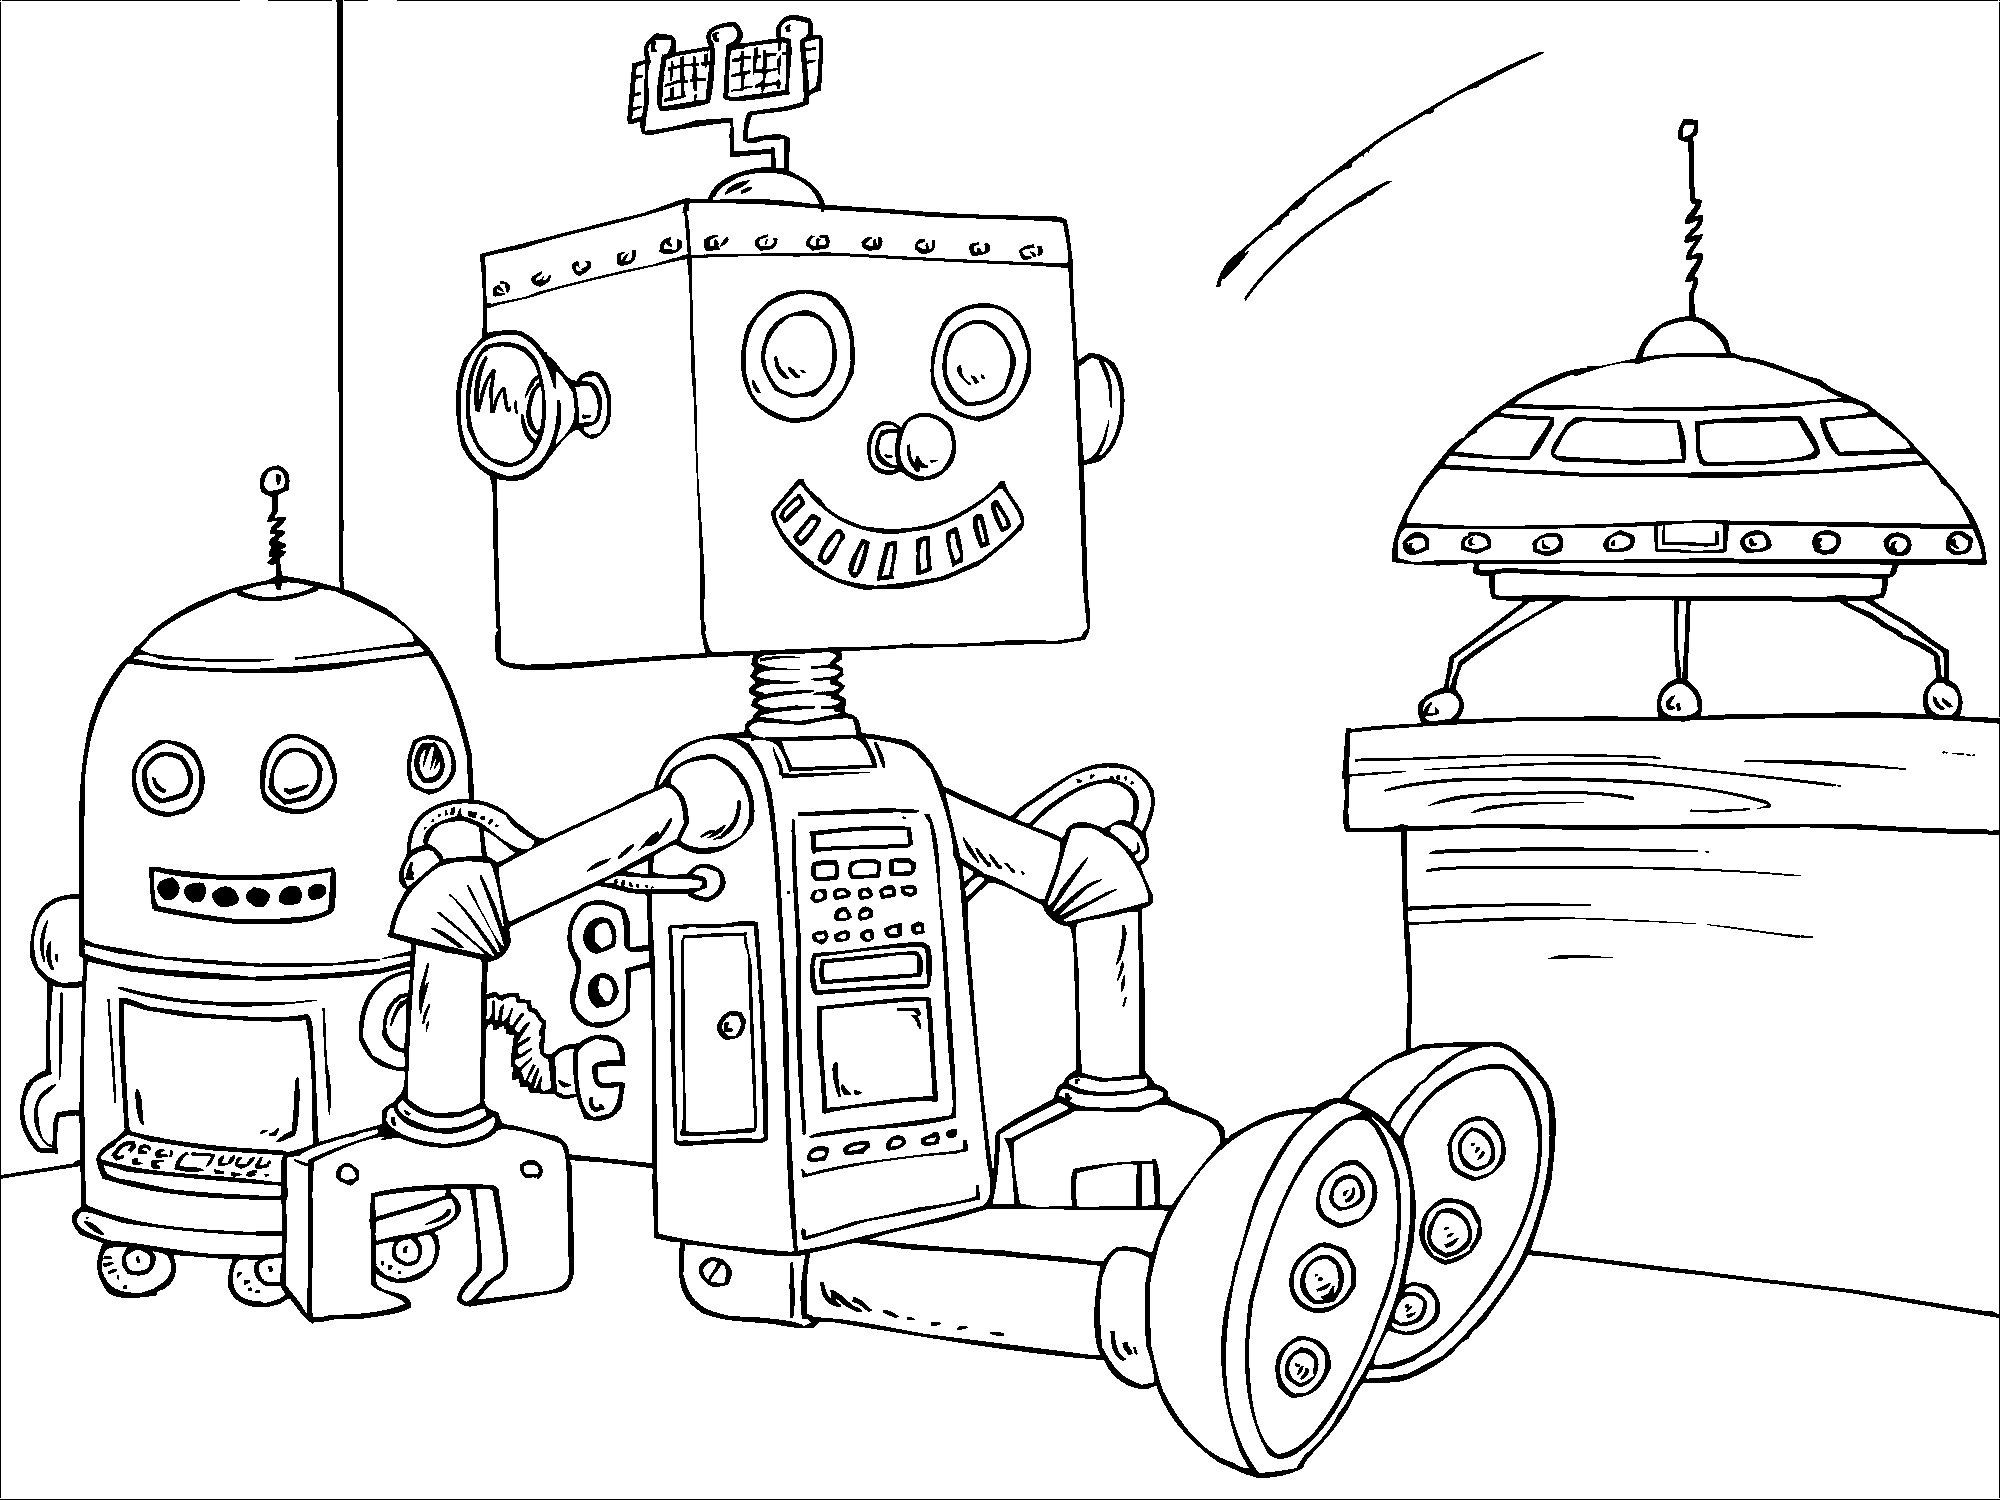 Раскраски с роботами из зарубежных мультфильмов для подростков  Маленькие роботы сидят